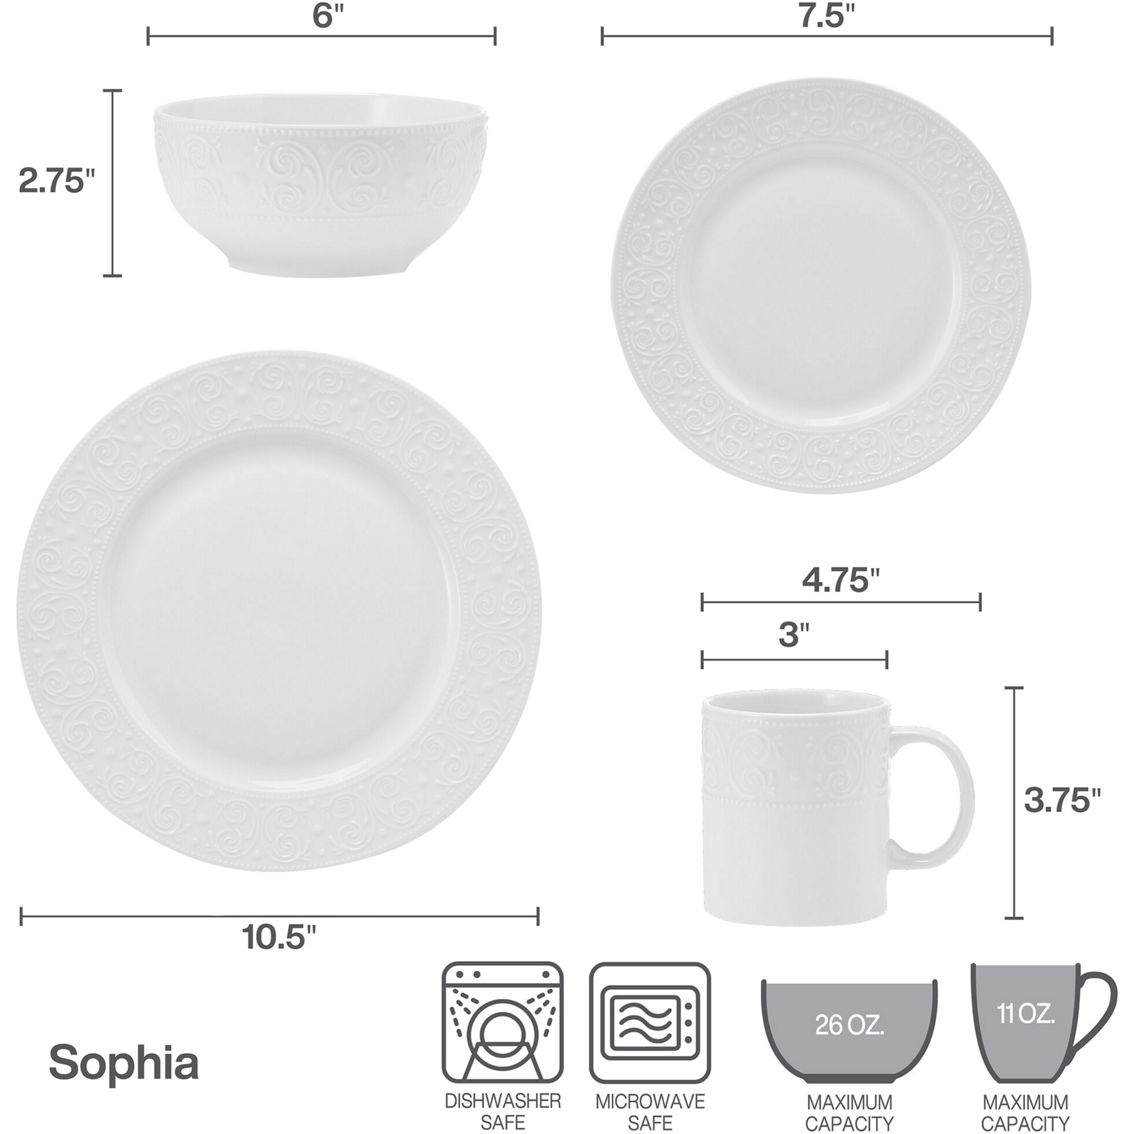 Pfaltzgraff Sophia Porcelain Dinnerware Set 32 pc. - Image 8 of 8